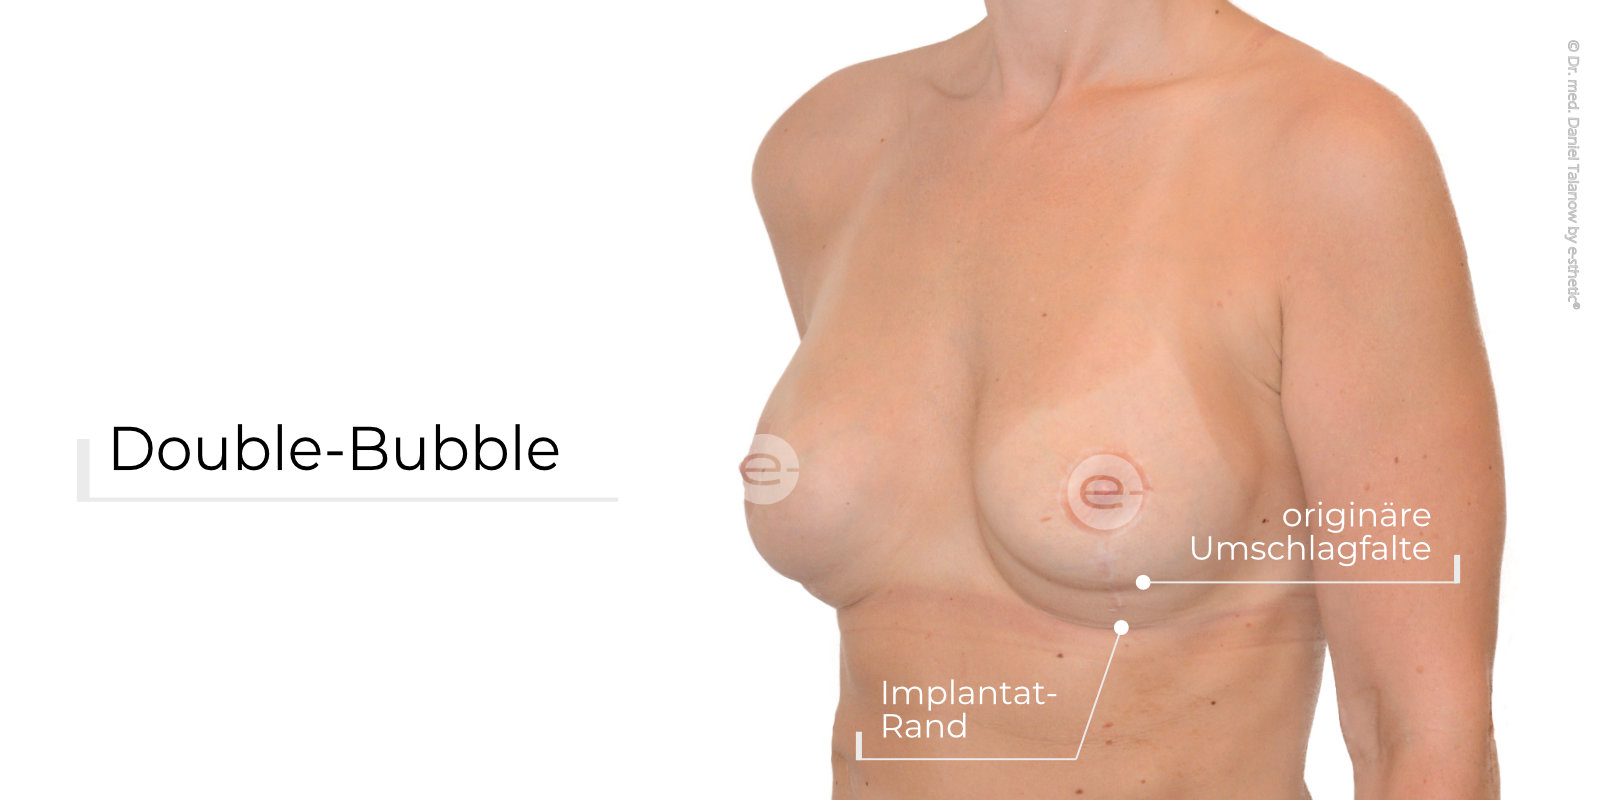 Beispiel einer Double-Bubble nach Brustvergrößerung